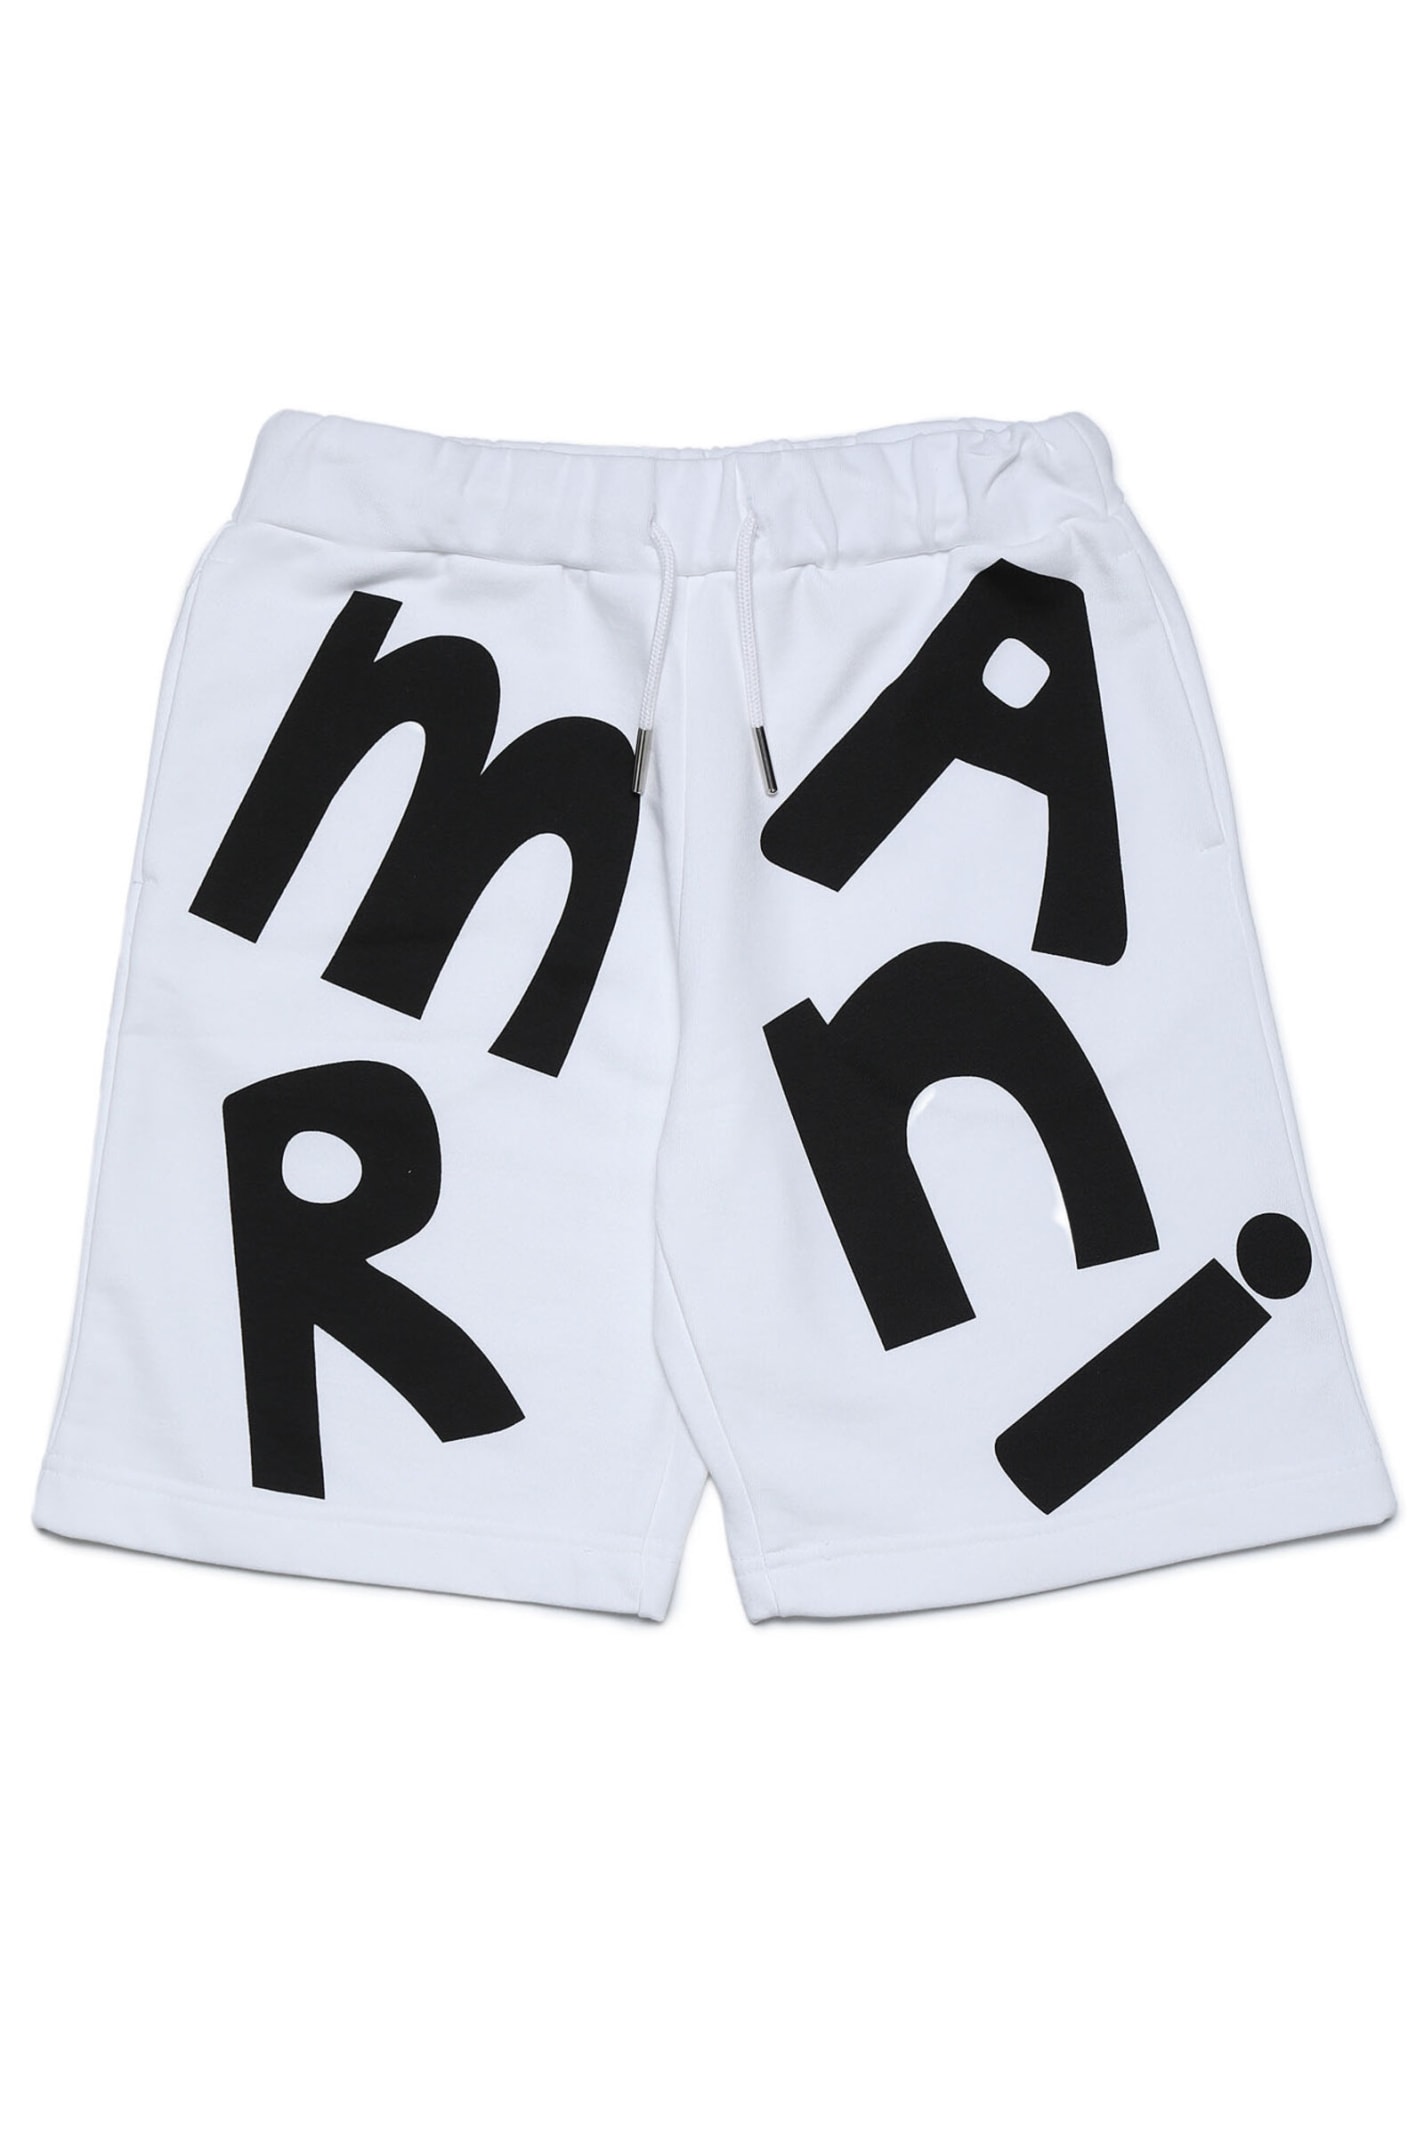 Mp18u Shorts Marni